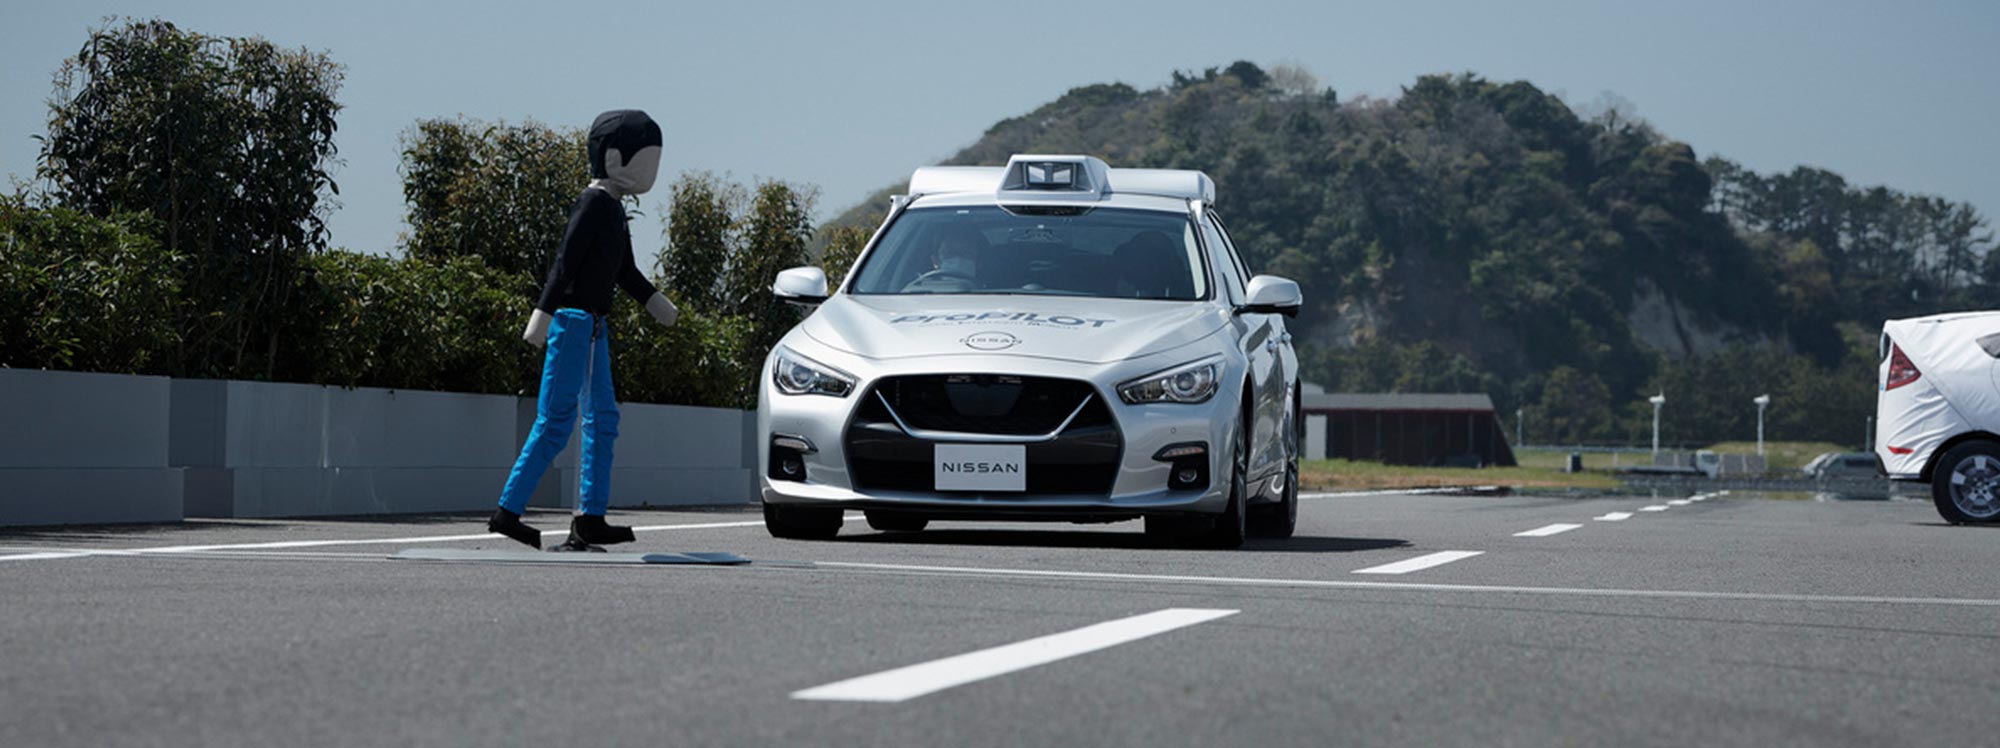 Nissan: tecnología de asistencia de conducción que prevee colisiones